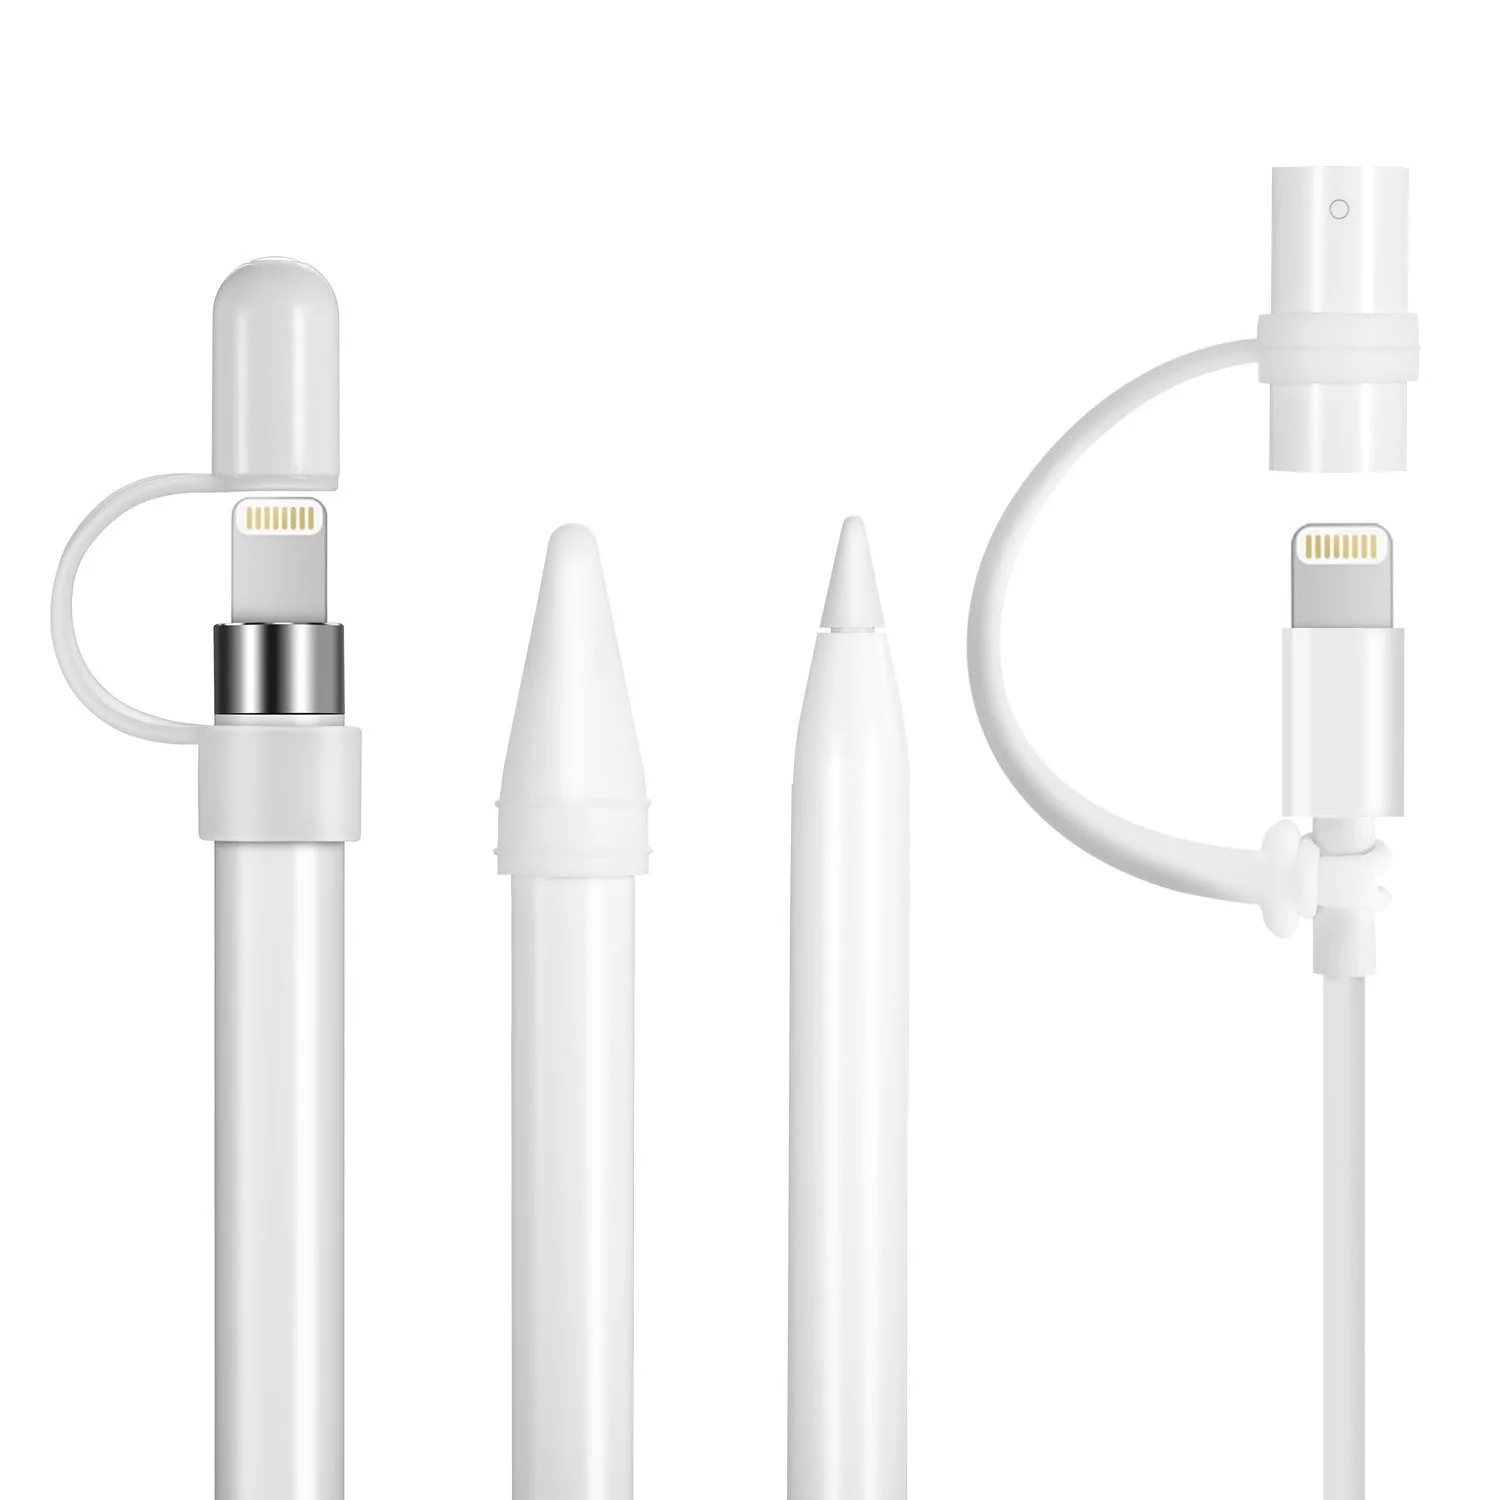 2 комплекта силиконовый защитный колпачок держатель наконечник Защитная крышка светового кабеля адаптер трос аксессуары для iPad Pro Apple Pencil